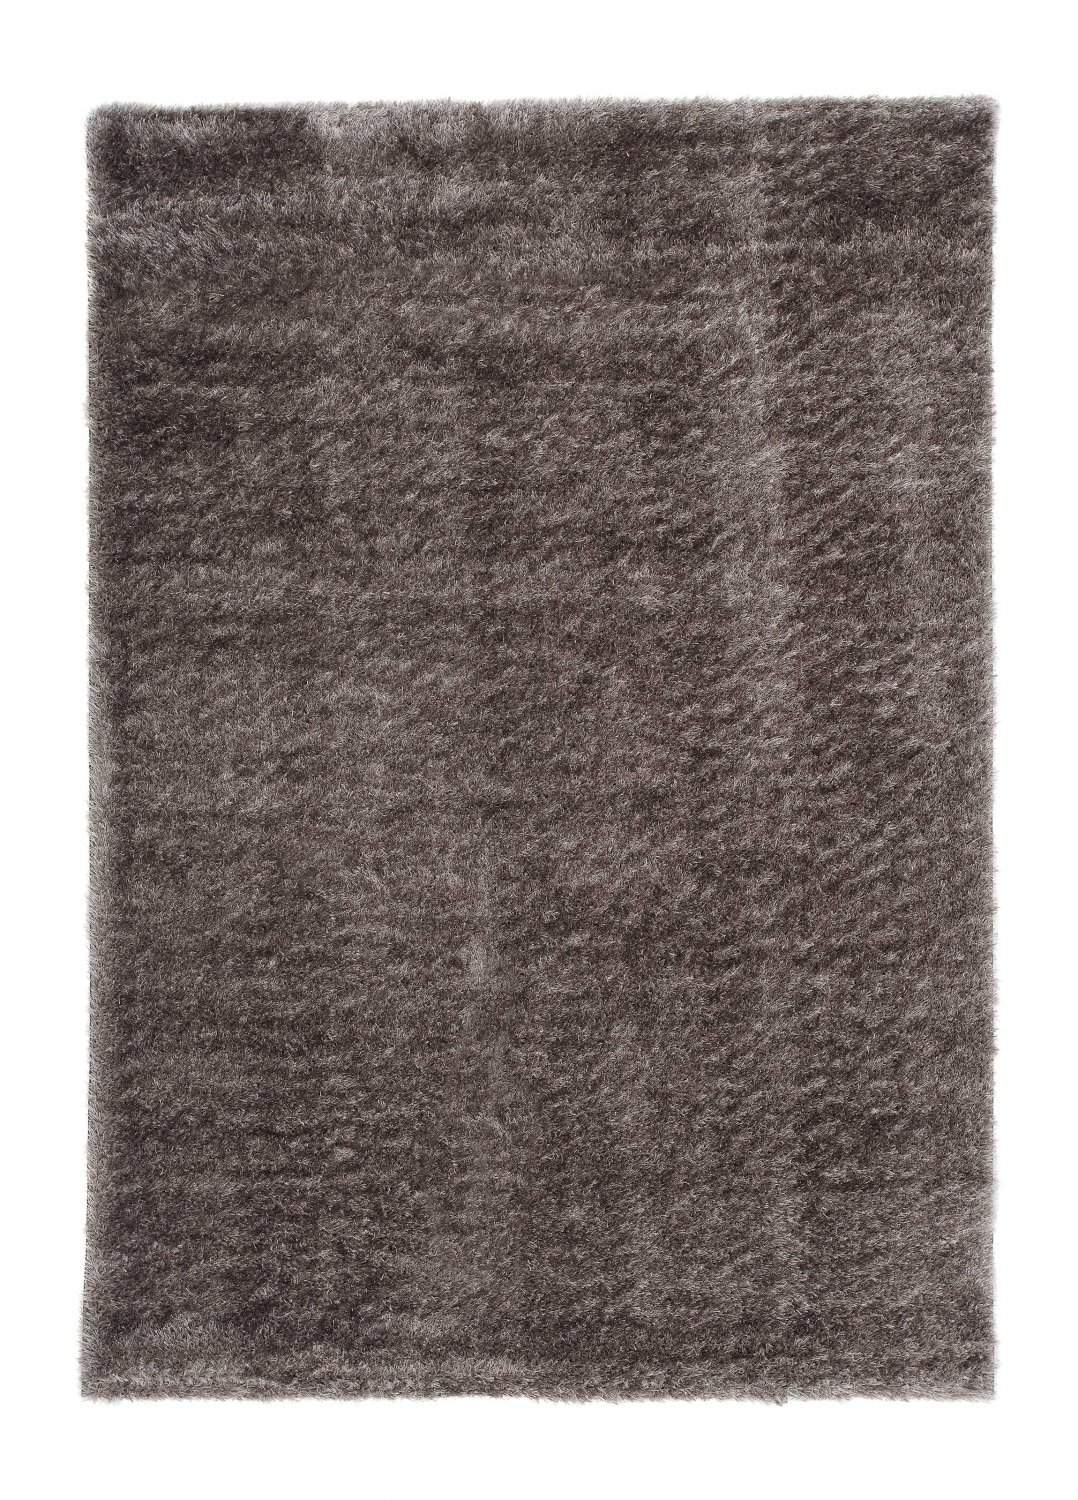 Safir matta rya ryamatta rund grå lång lugg kort 60x120 cm 80x 150 cm 140x200 cm 160x230 cm 200x300 cm